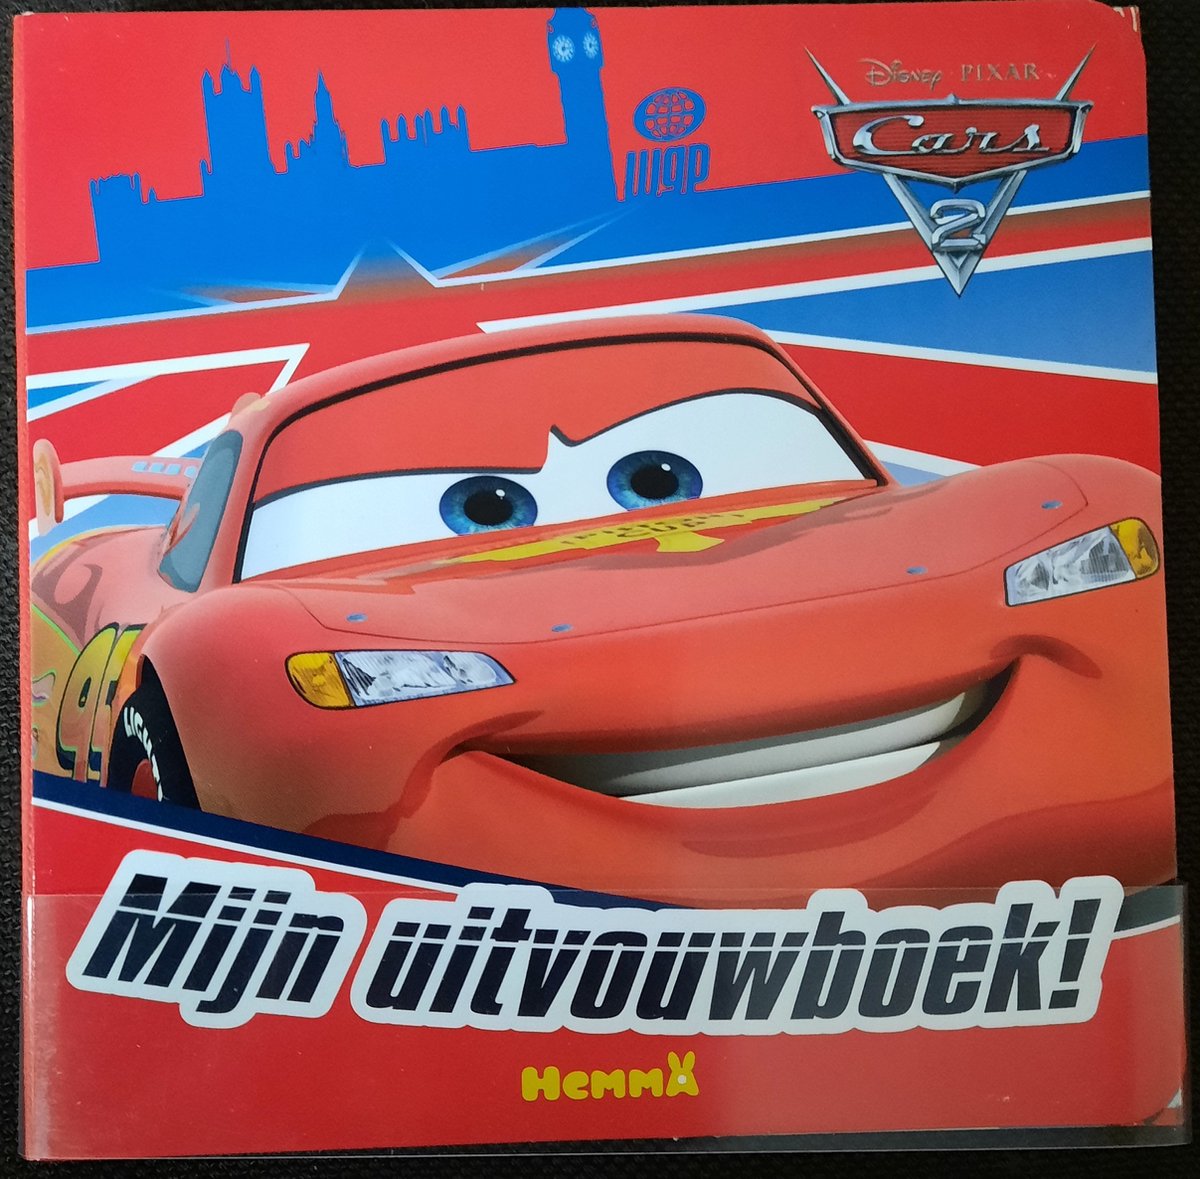 Disney Cars Mijn Uitvouwboek